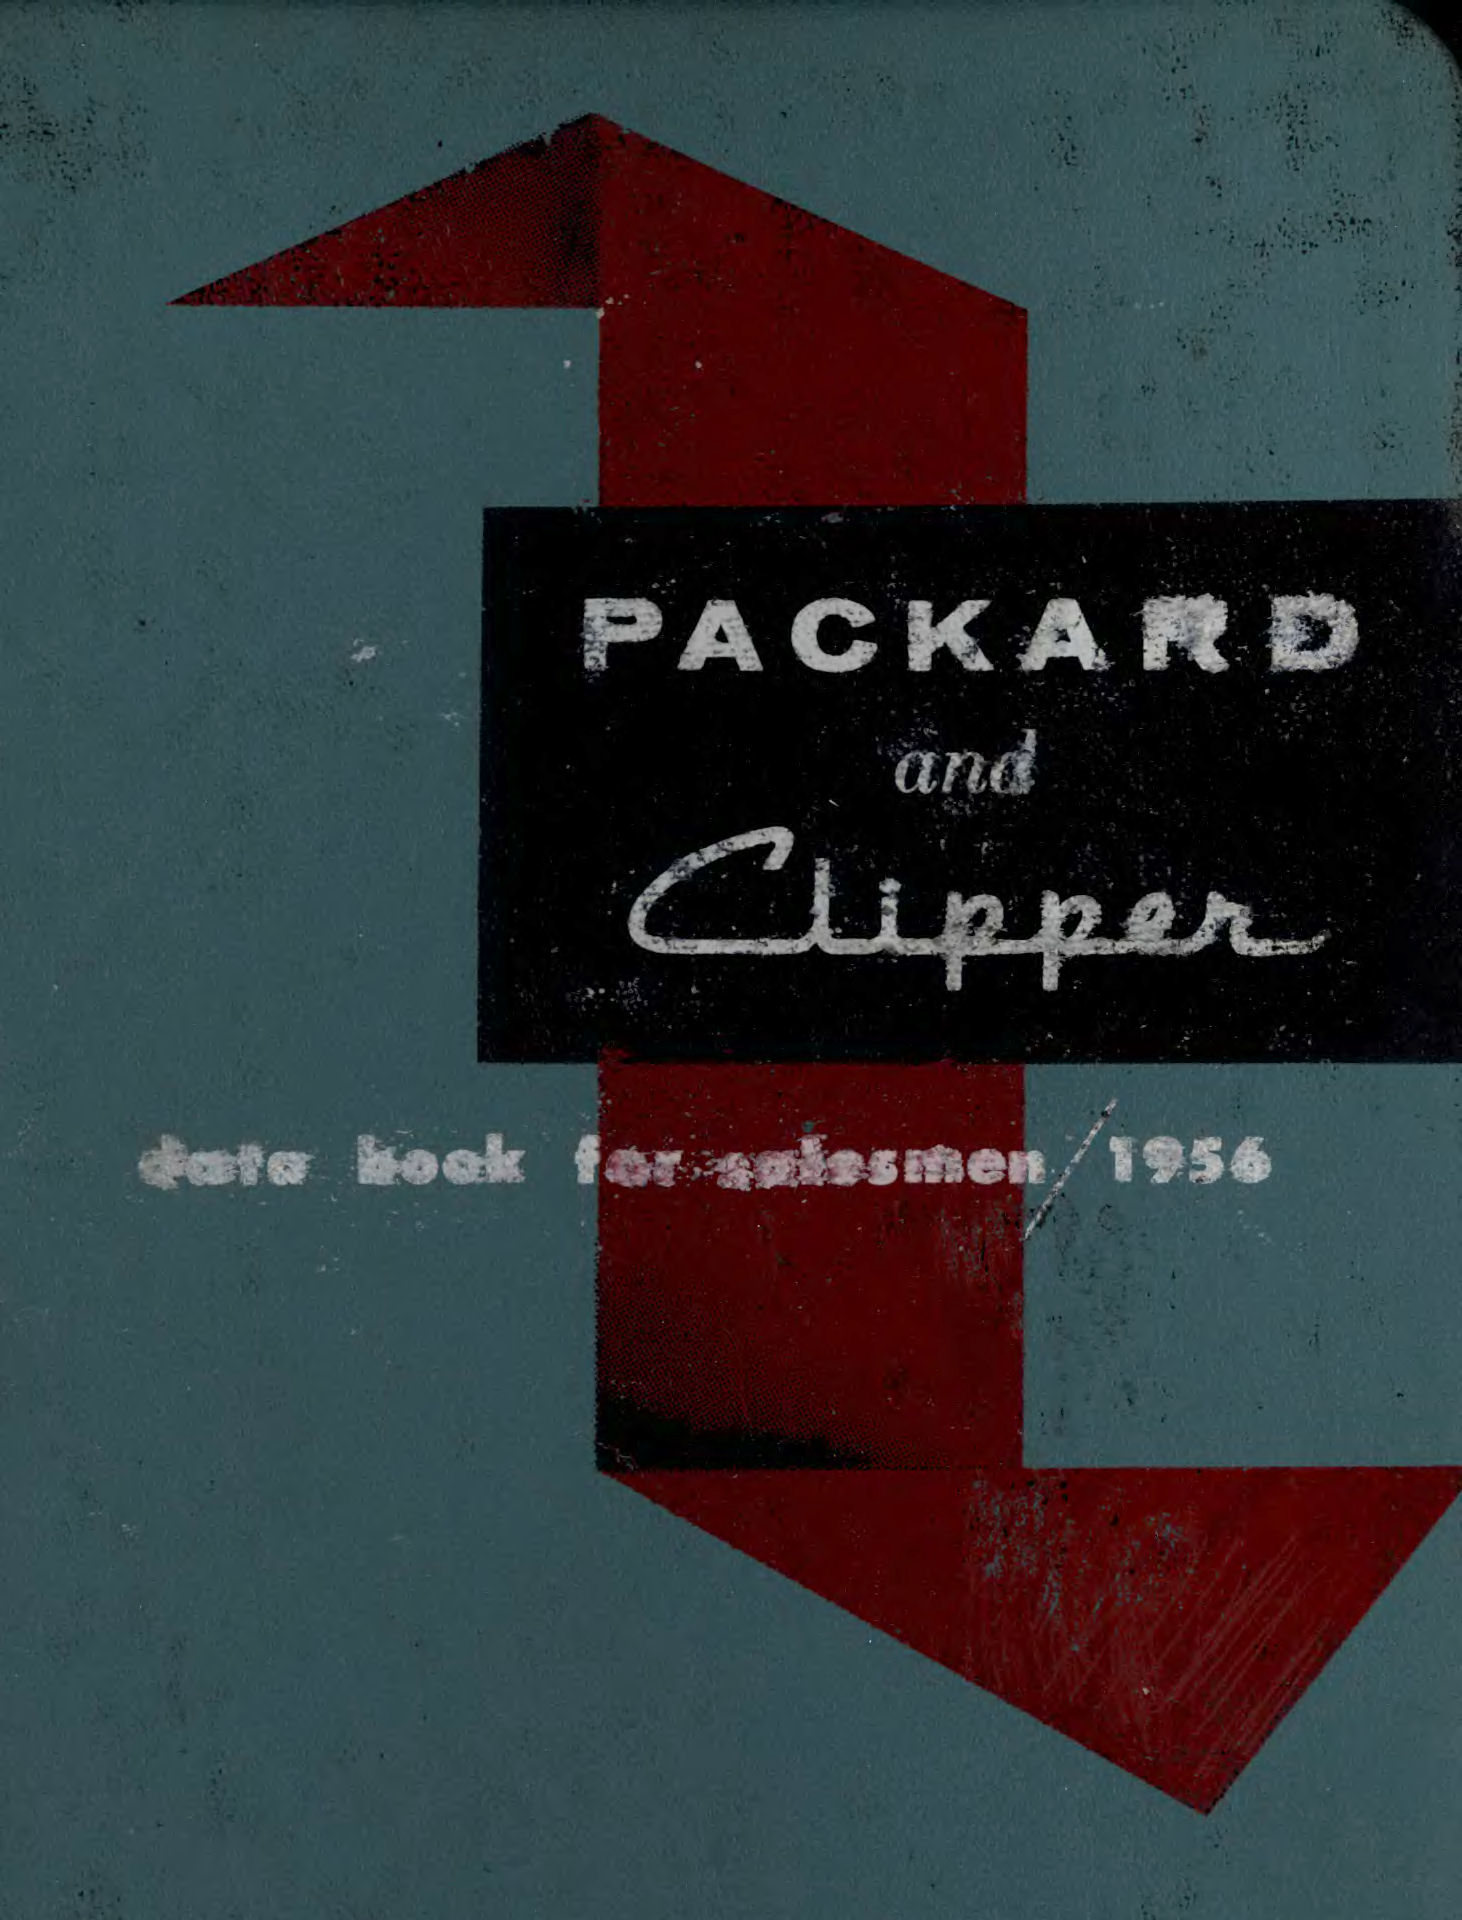 1956 Packard Data Book